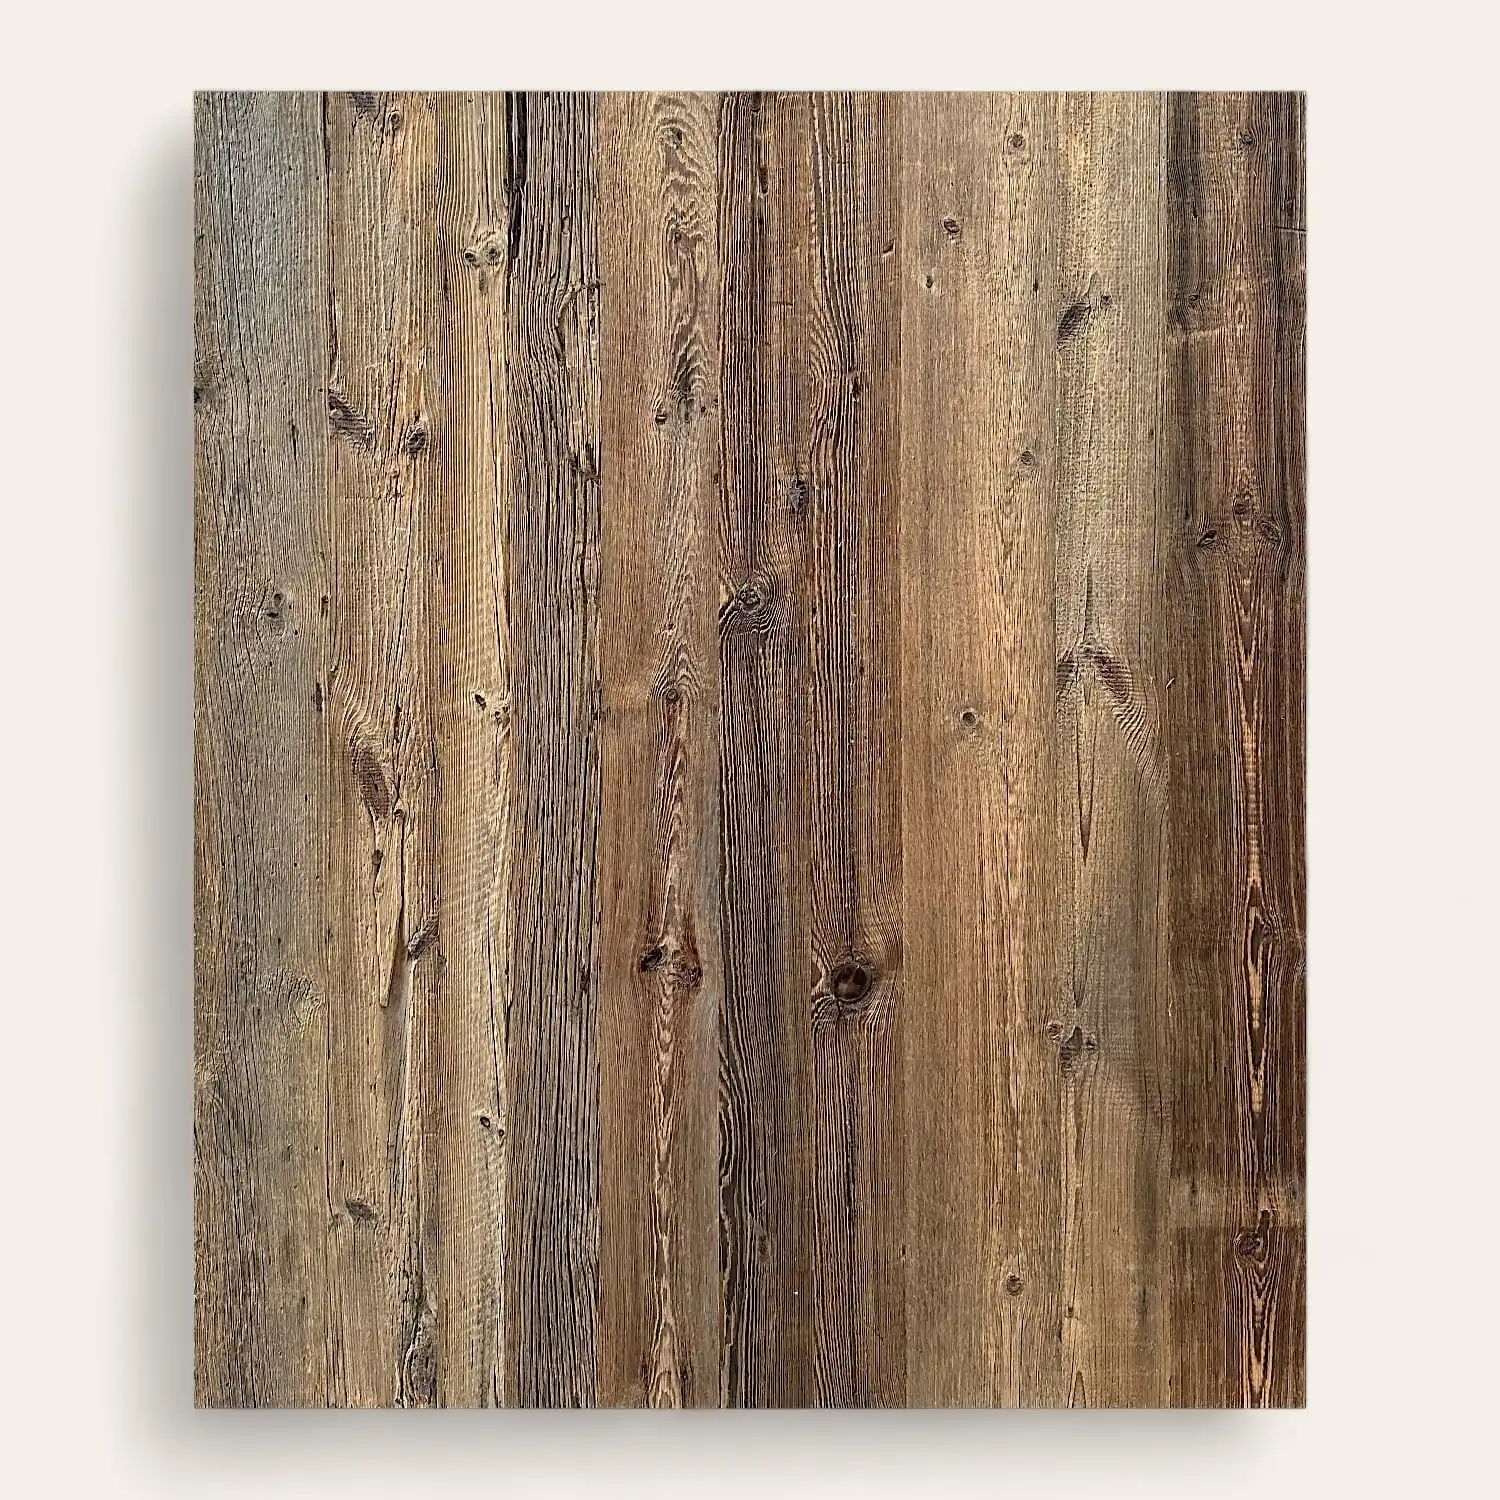  Une photo en gros plan d'un panneau de vieux bois texturé à 5 plis comportant des planches verticales avec des nœuds et des détails de grain visibles. 